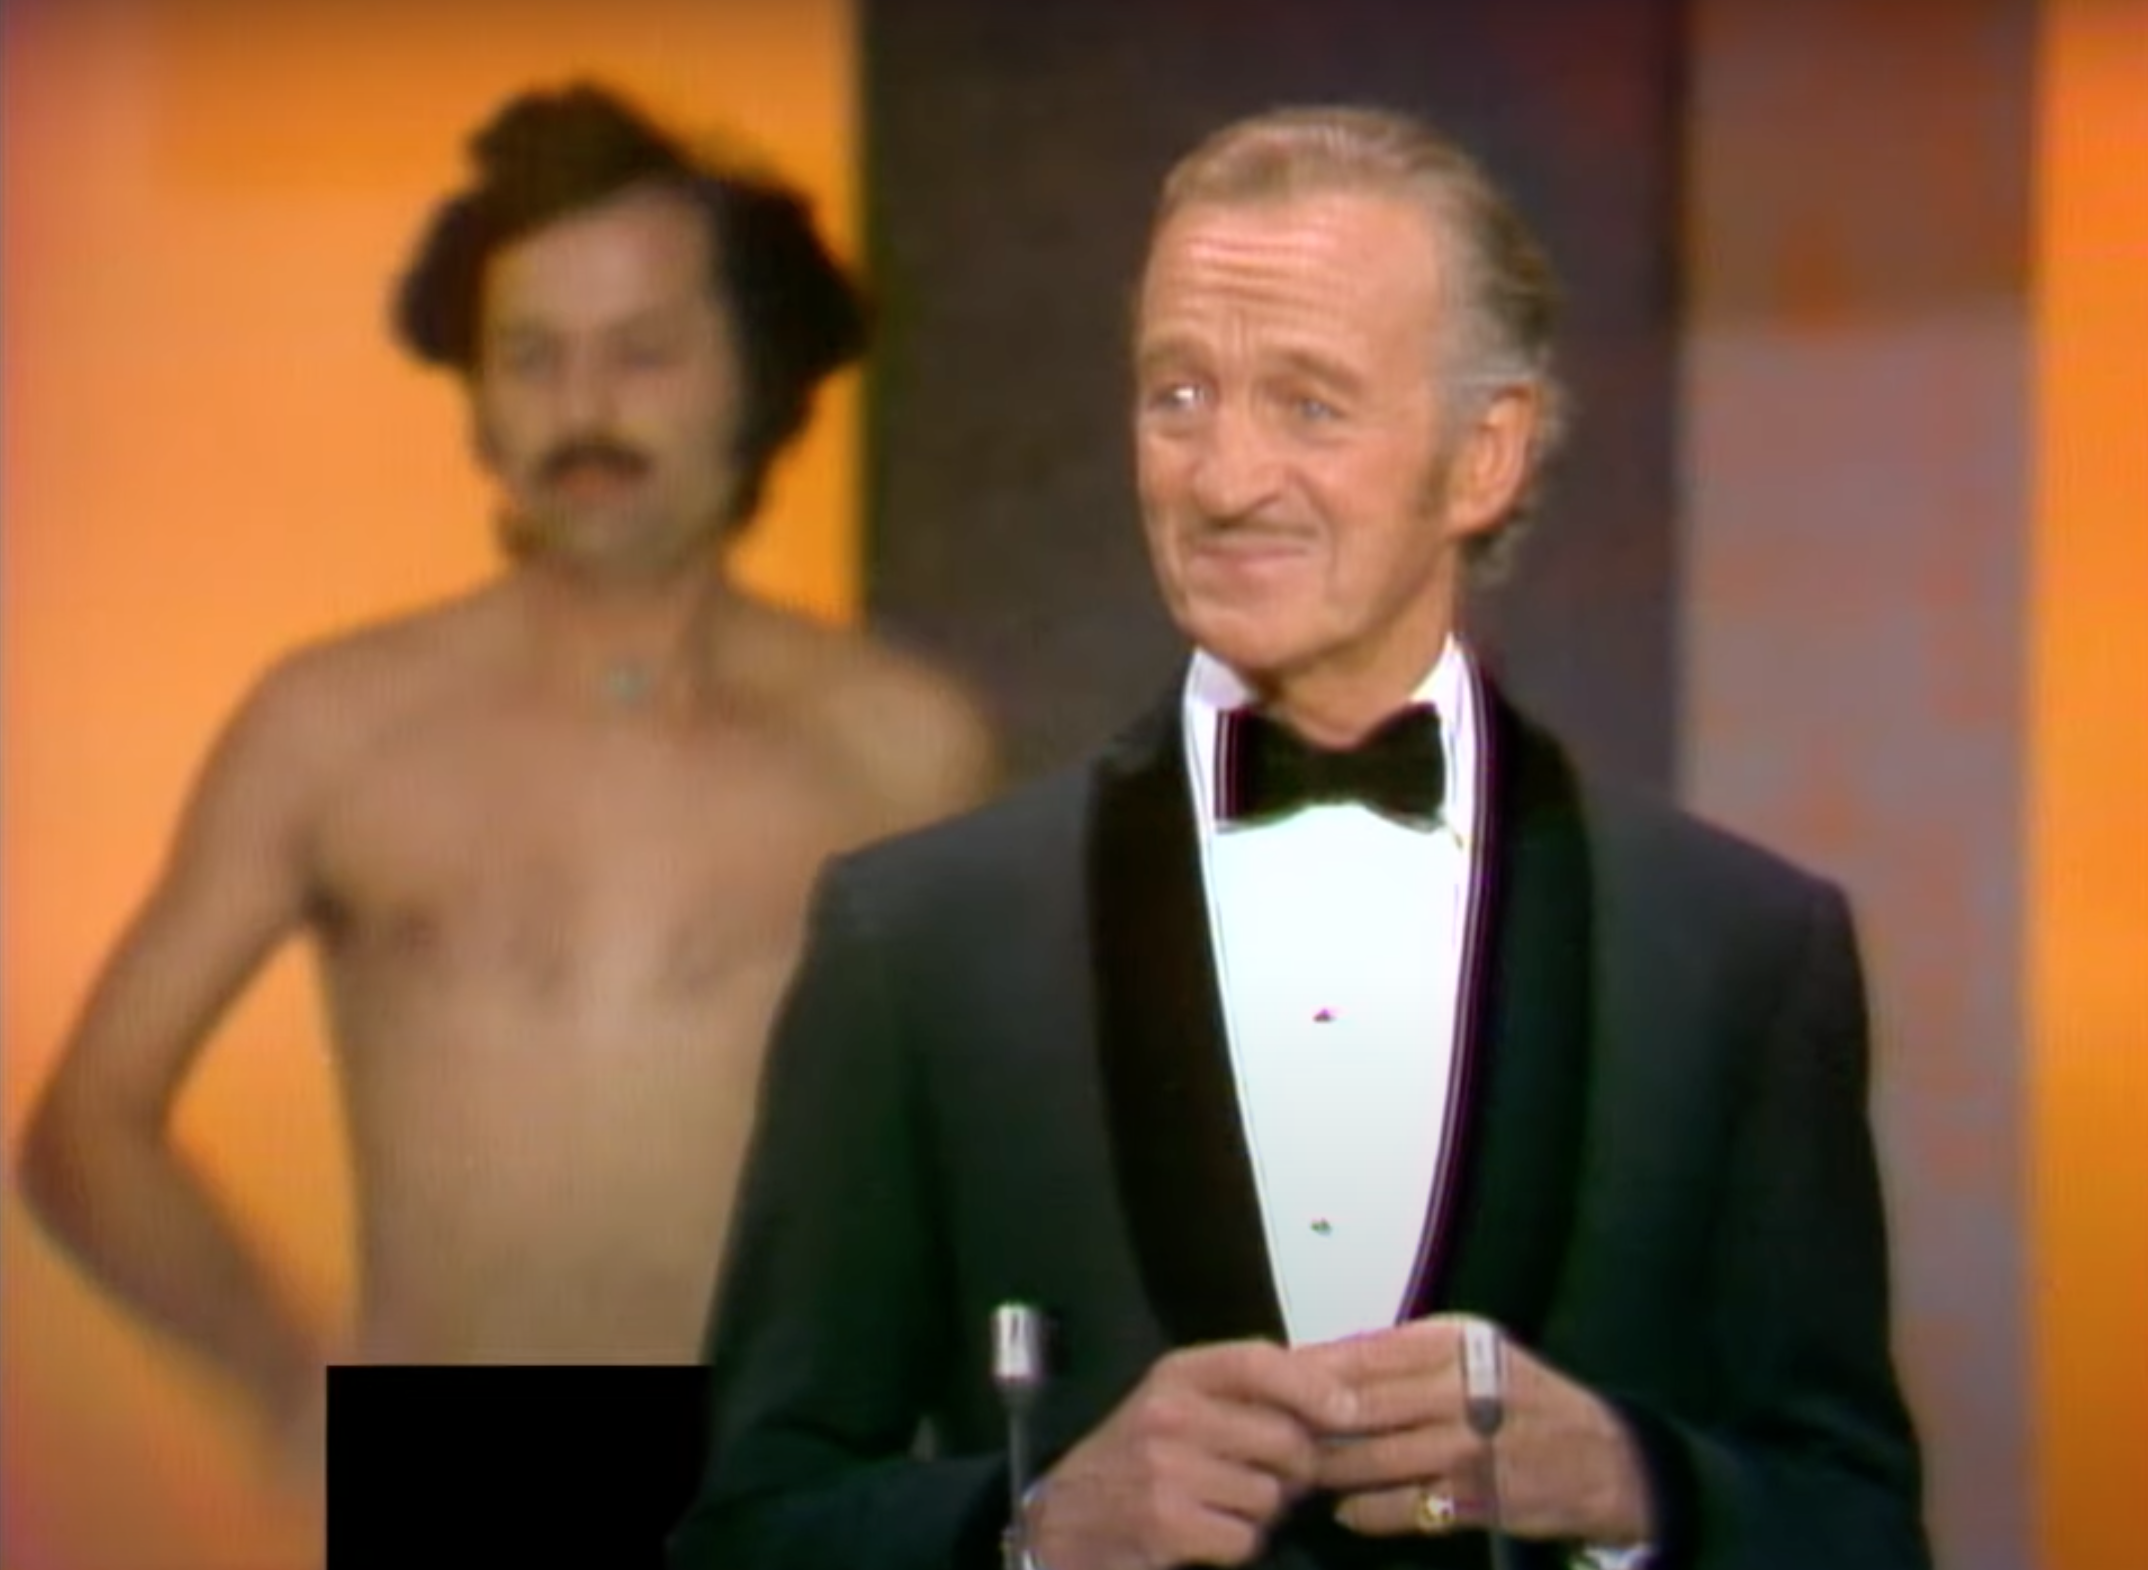 David Nien lors de la 46e cérémonie annuelle des Oscars au Dorothy Chandler Pavilion à Los Angeles, Californie, le 2 avril 1974 | Source : YouTube/@Oscars